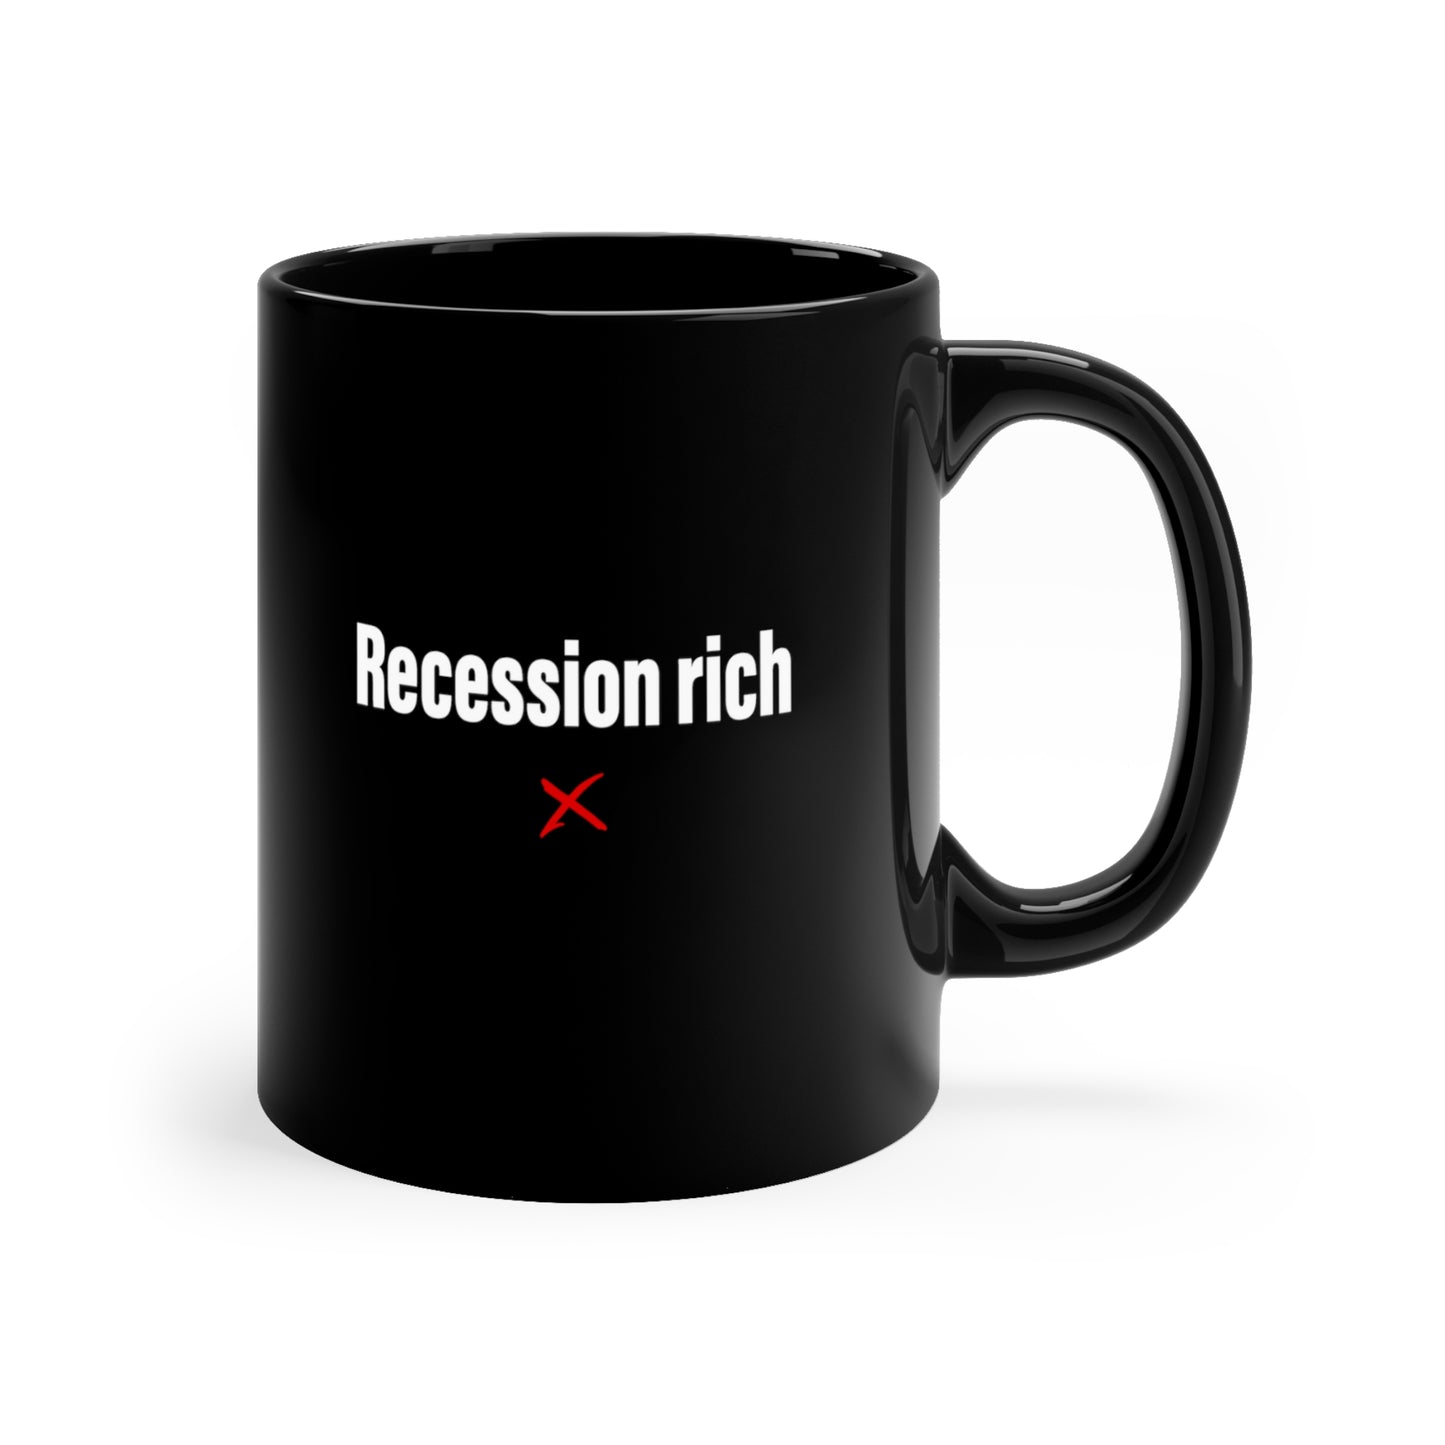 Recession rich - Mug